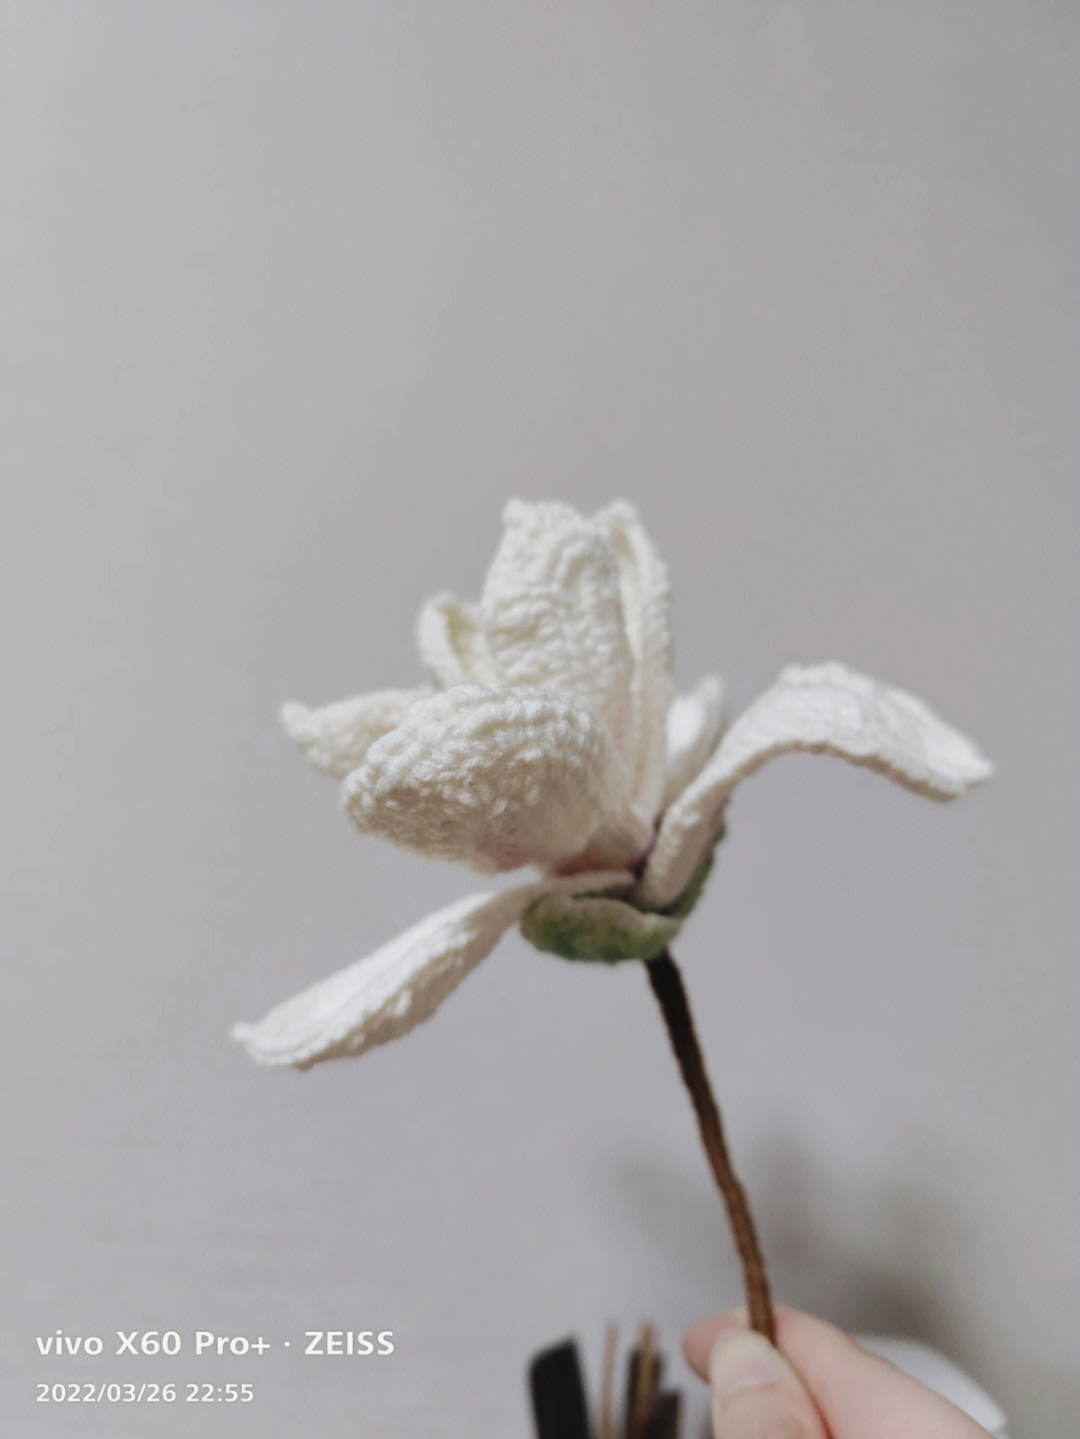 72玉线编织花朵图片